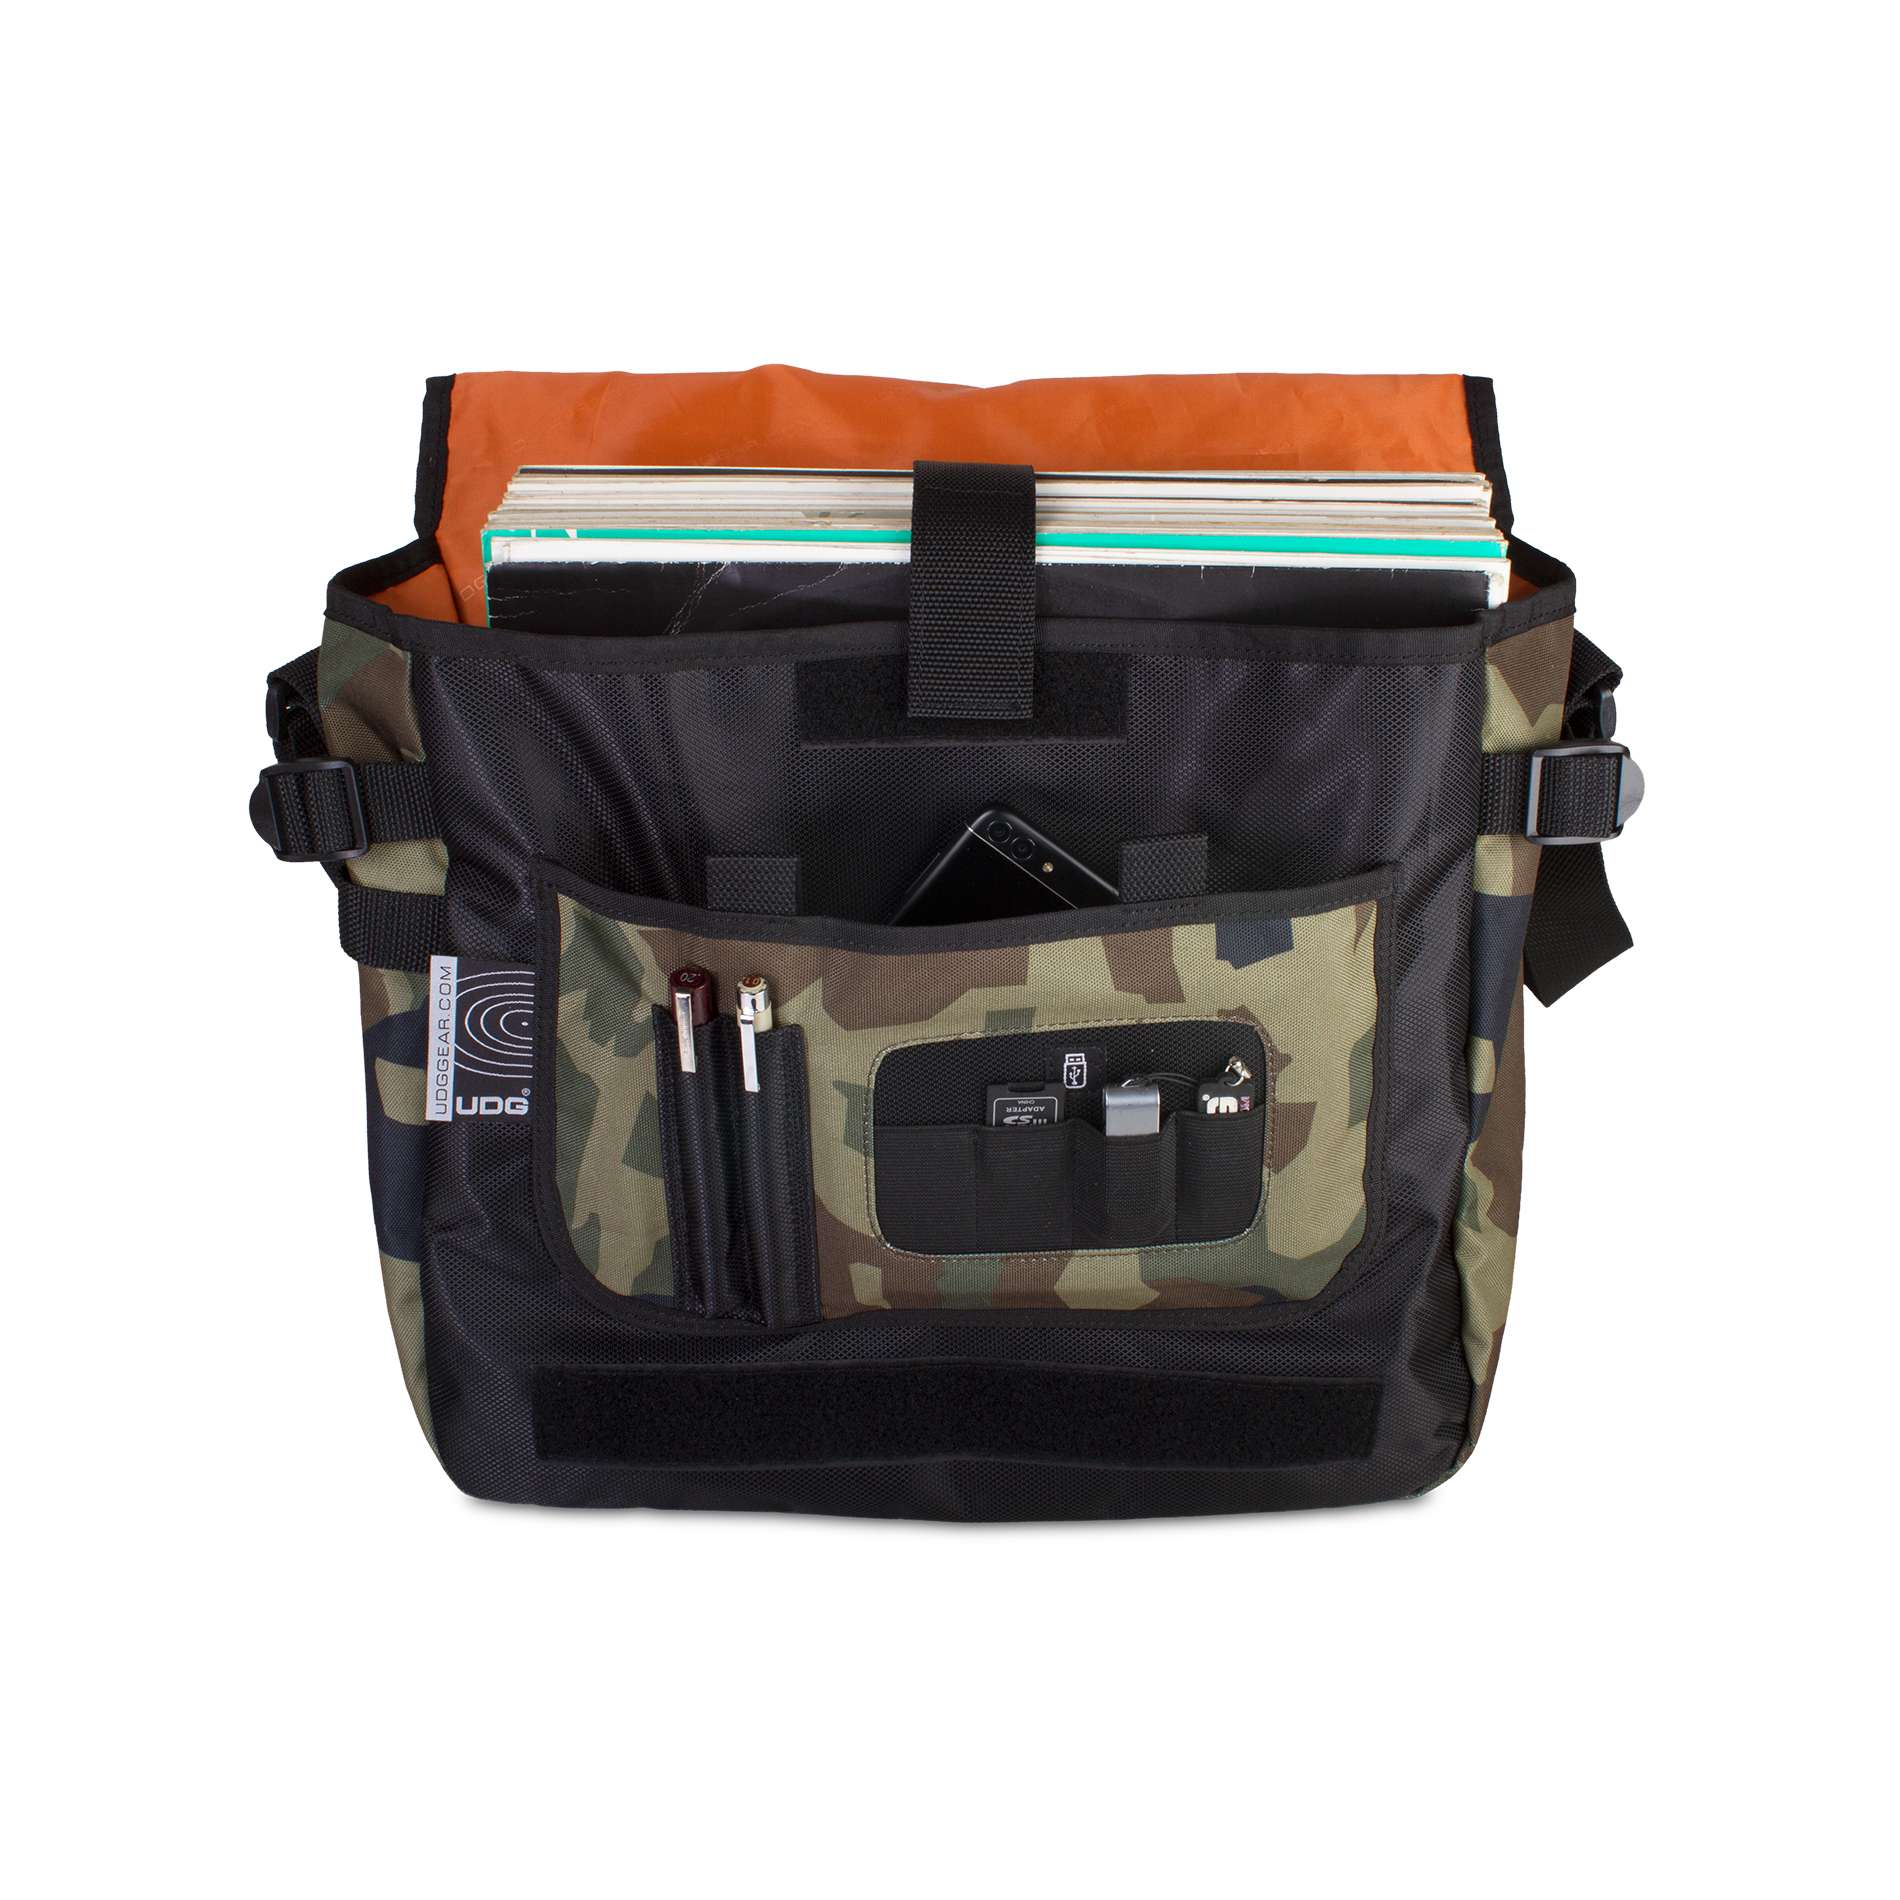 Udg U 9450 Bc-or(courierbag Black Camo Orange) - DJ-Tasche - Variation 2